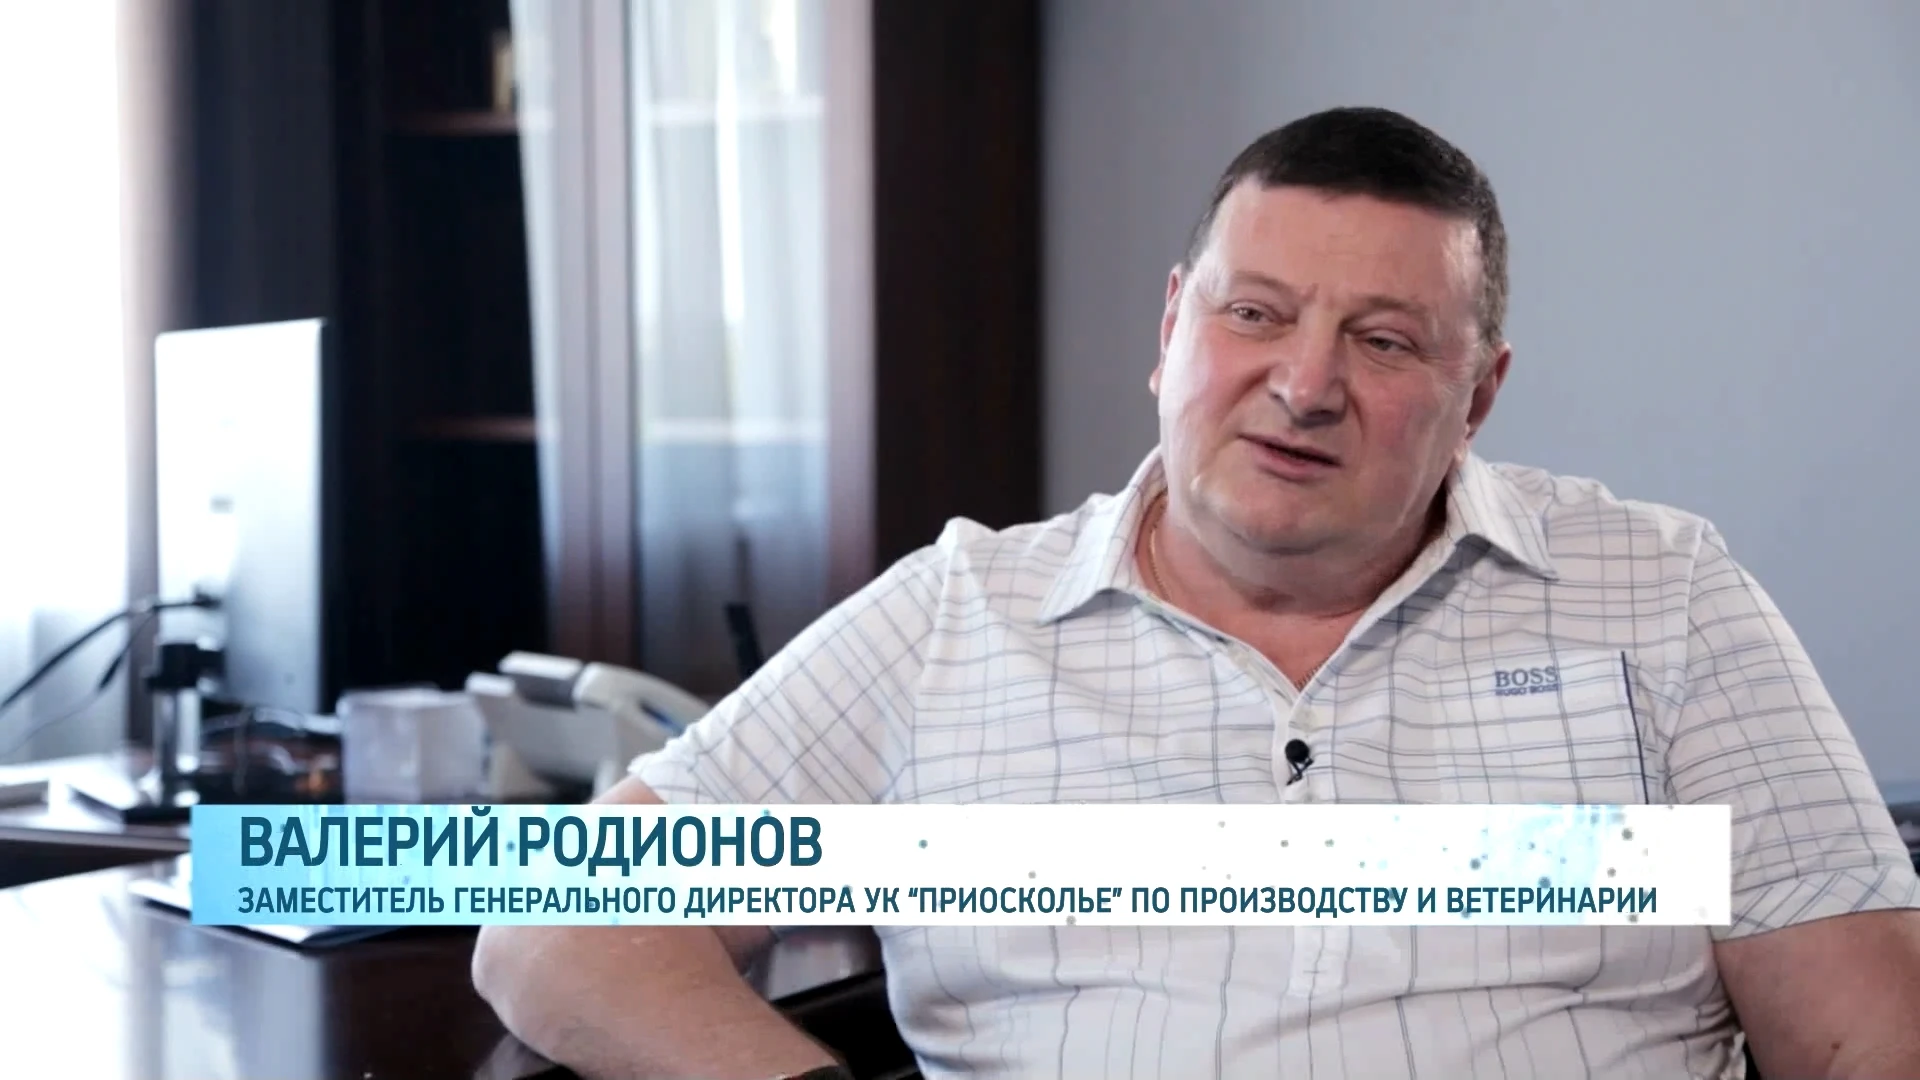 Валерий Родионов - заместитель генерального директора УК «Приосколье» по производству и ветеринарии